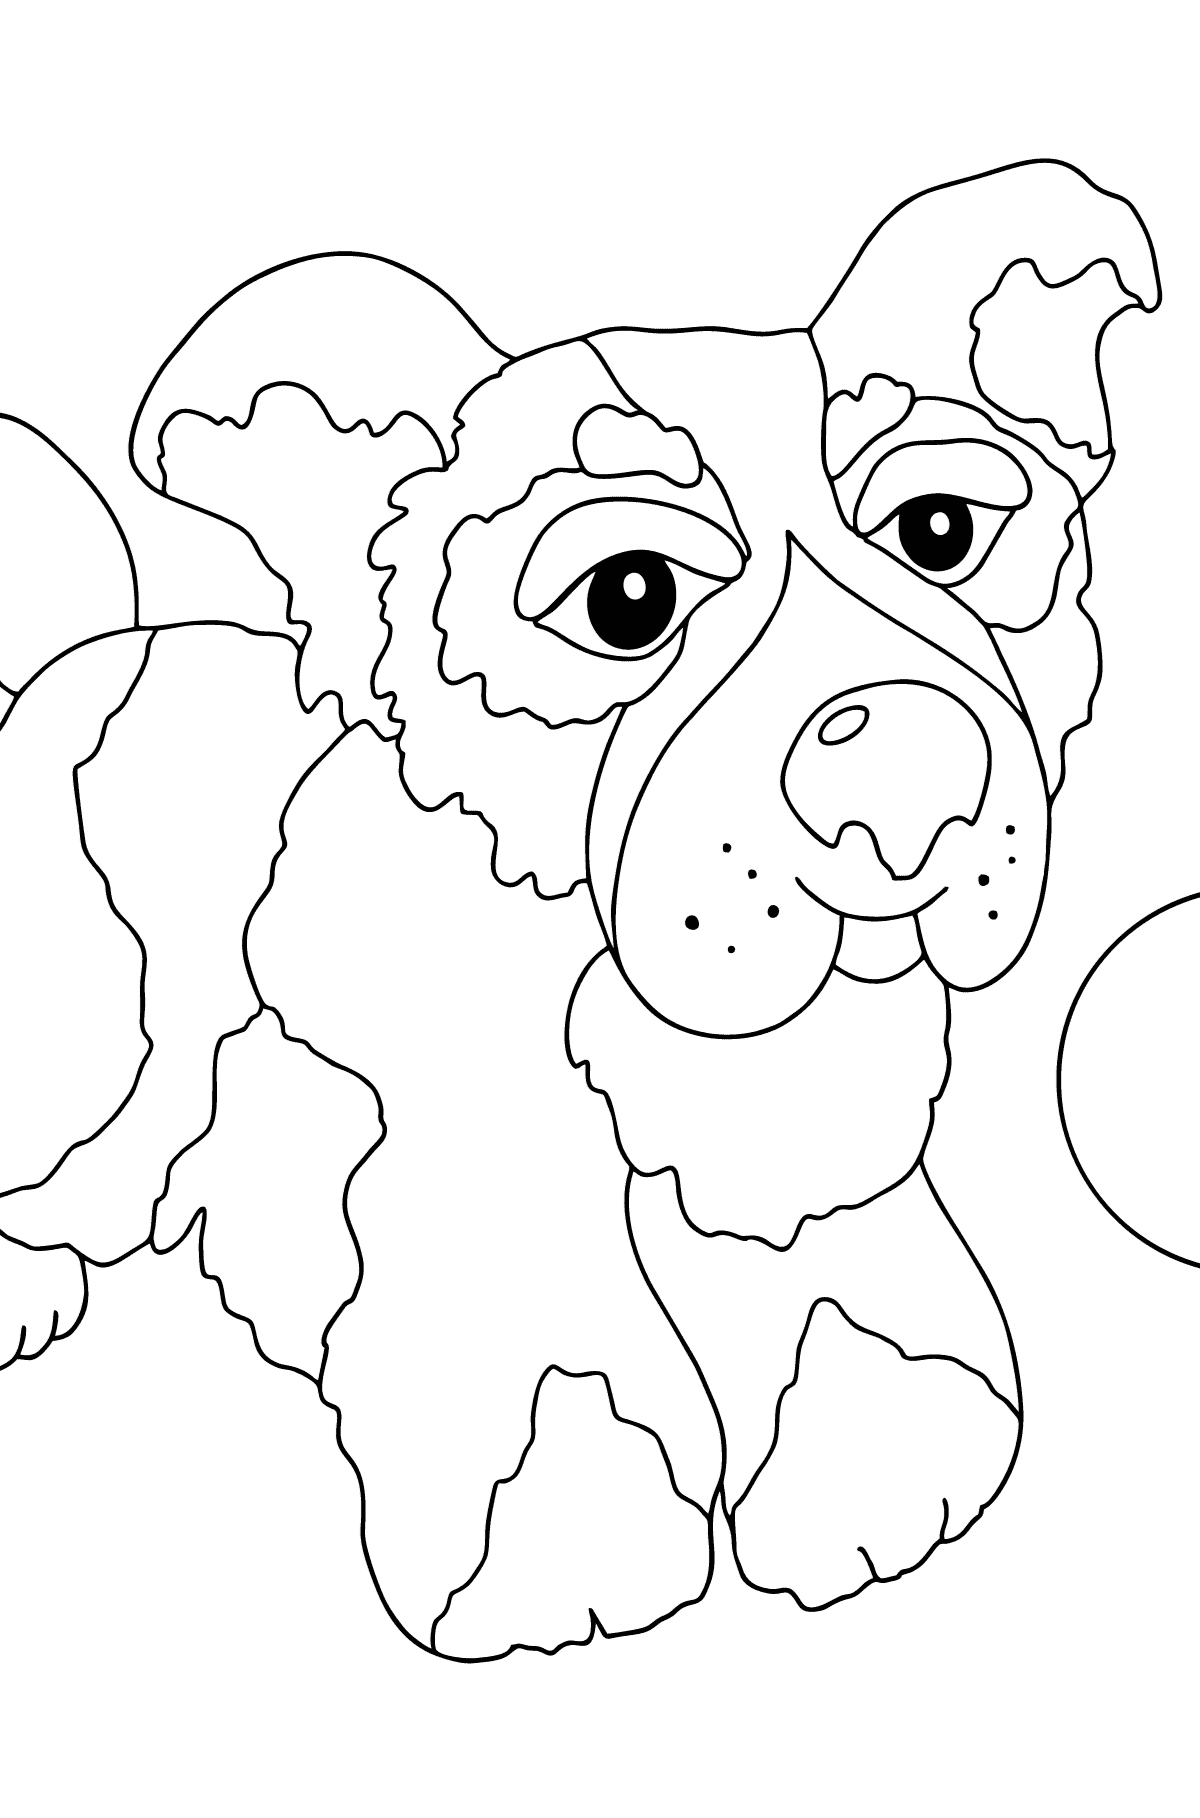 Boyama sayfası harika köpek (kolay) - Boyamalar çocuklar için